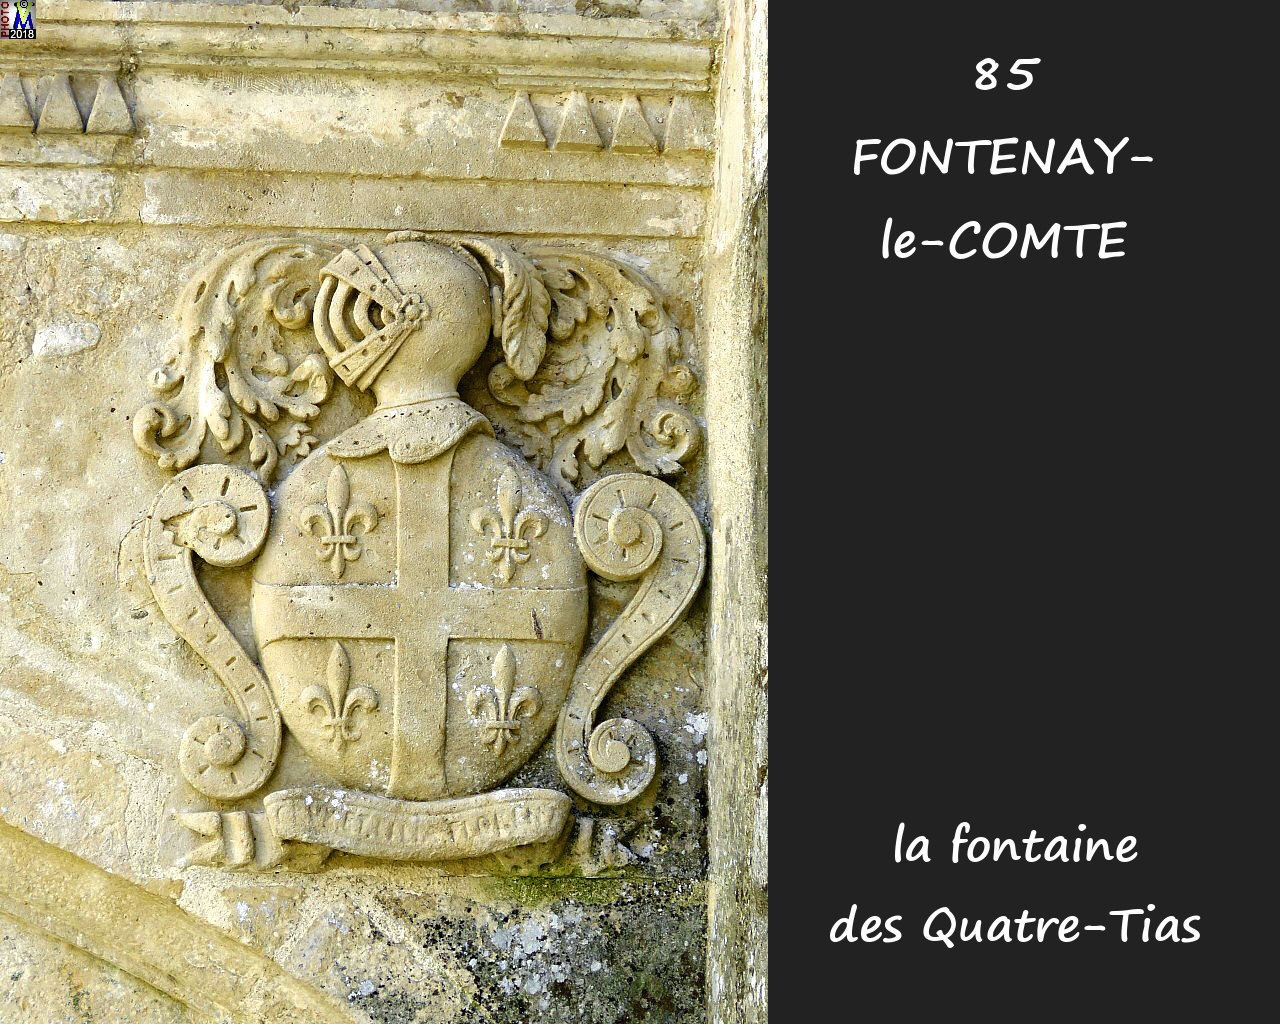 85FONTENAY-COMTE_fontaine4Tias_1014.jpg